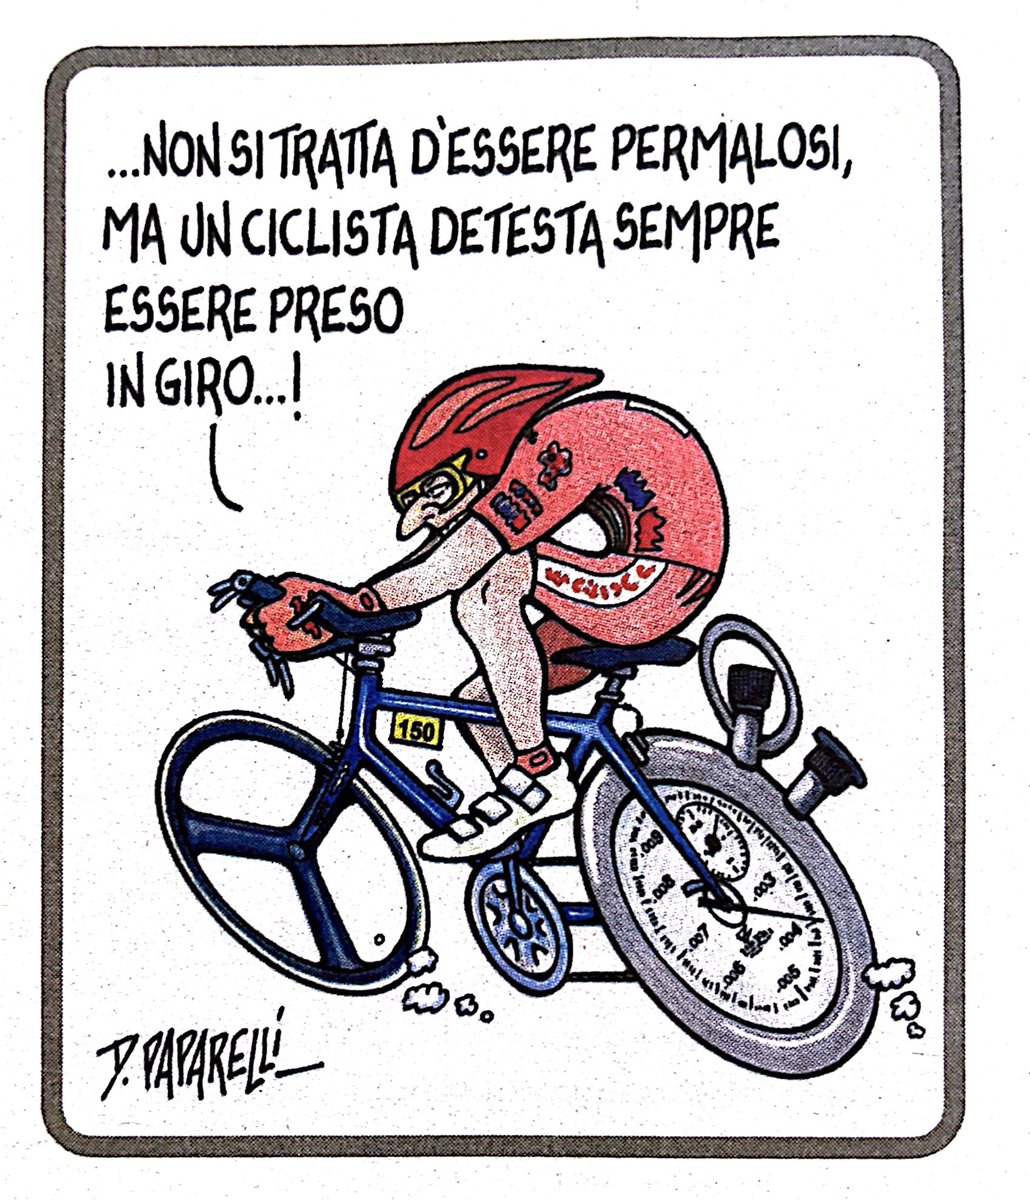 La #vignetta pubblicata questa settimana sul periodico #EnigmisticaPiù a pagina 42 - #comic #cartoon #bicicletta #corsa #magliarosa